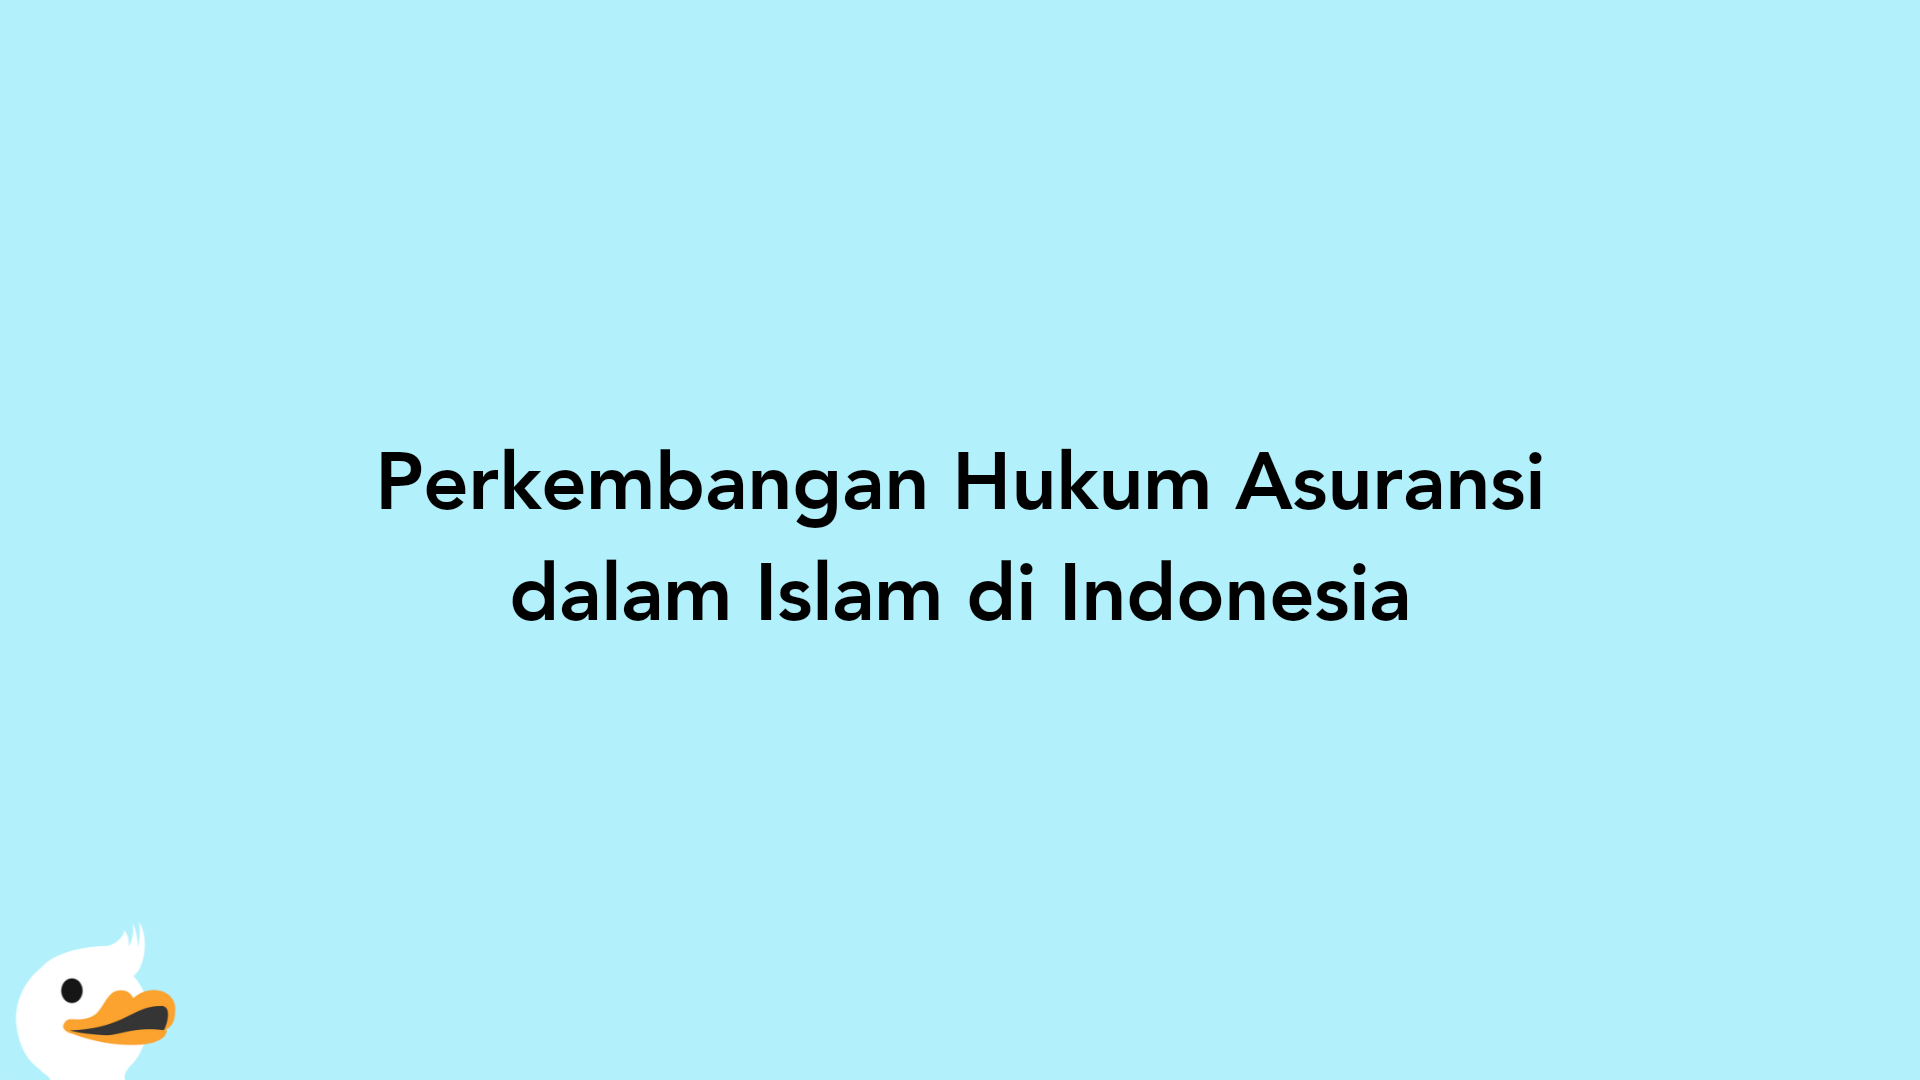 Perkembangan Hukum Asuransi dalam Islam di Indonesia